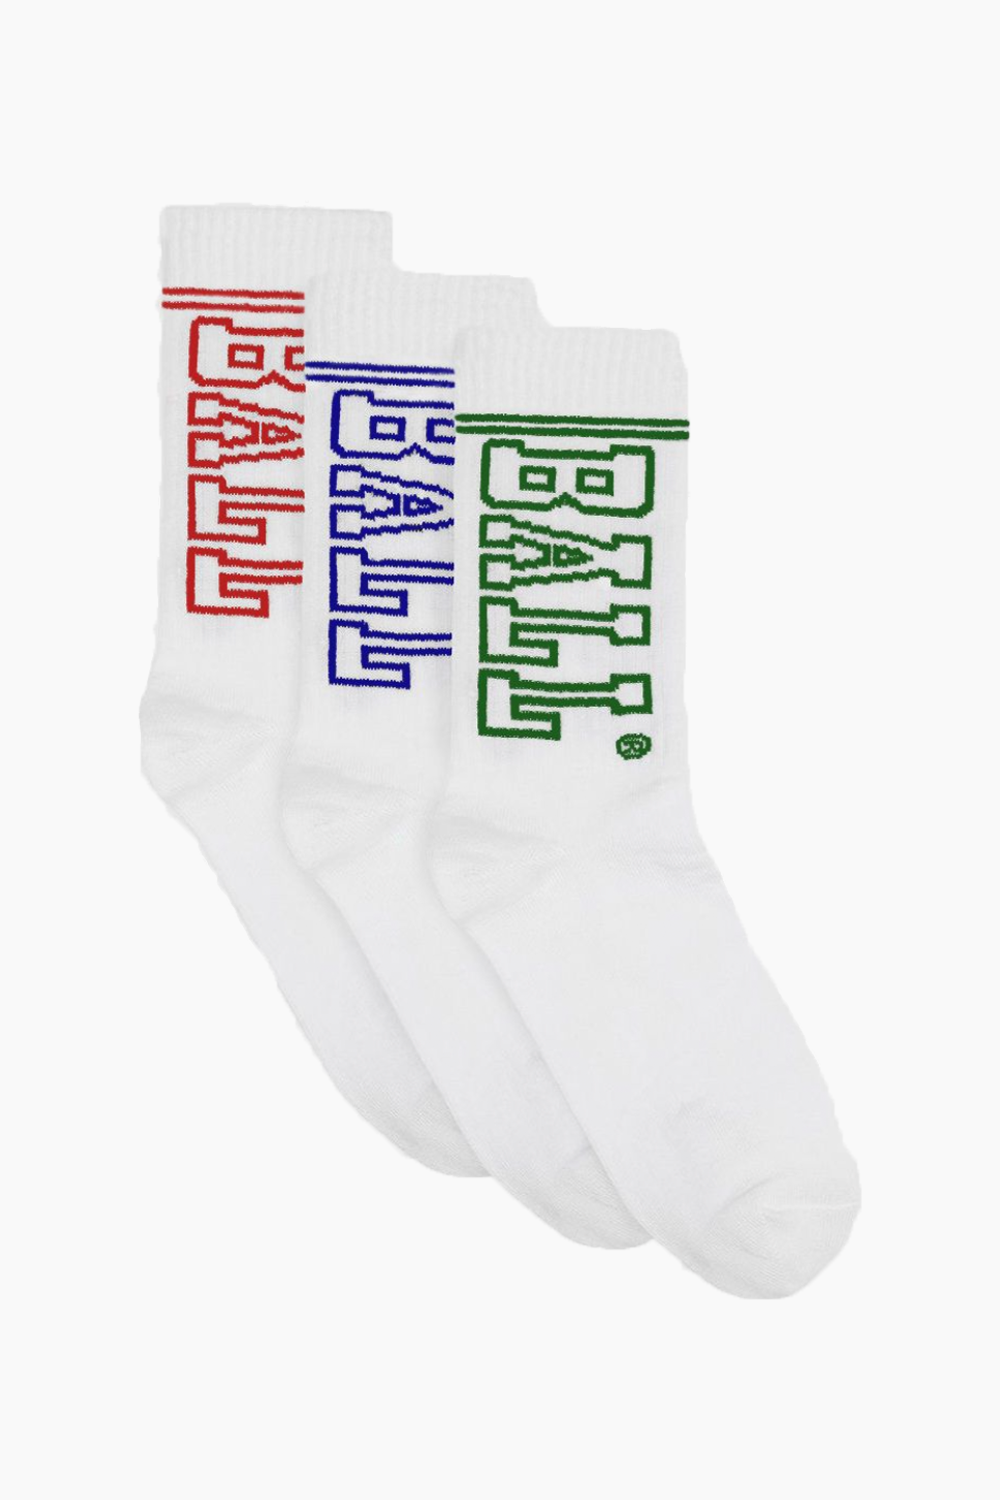 Ball Socks 3-pack - Red/Blue/Green - Ball